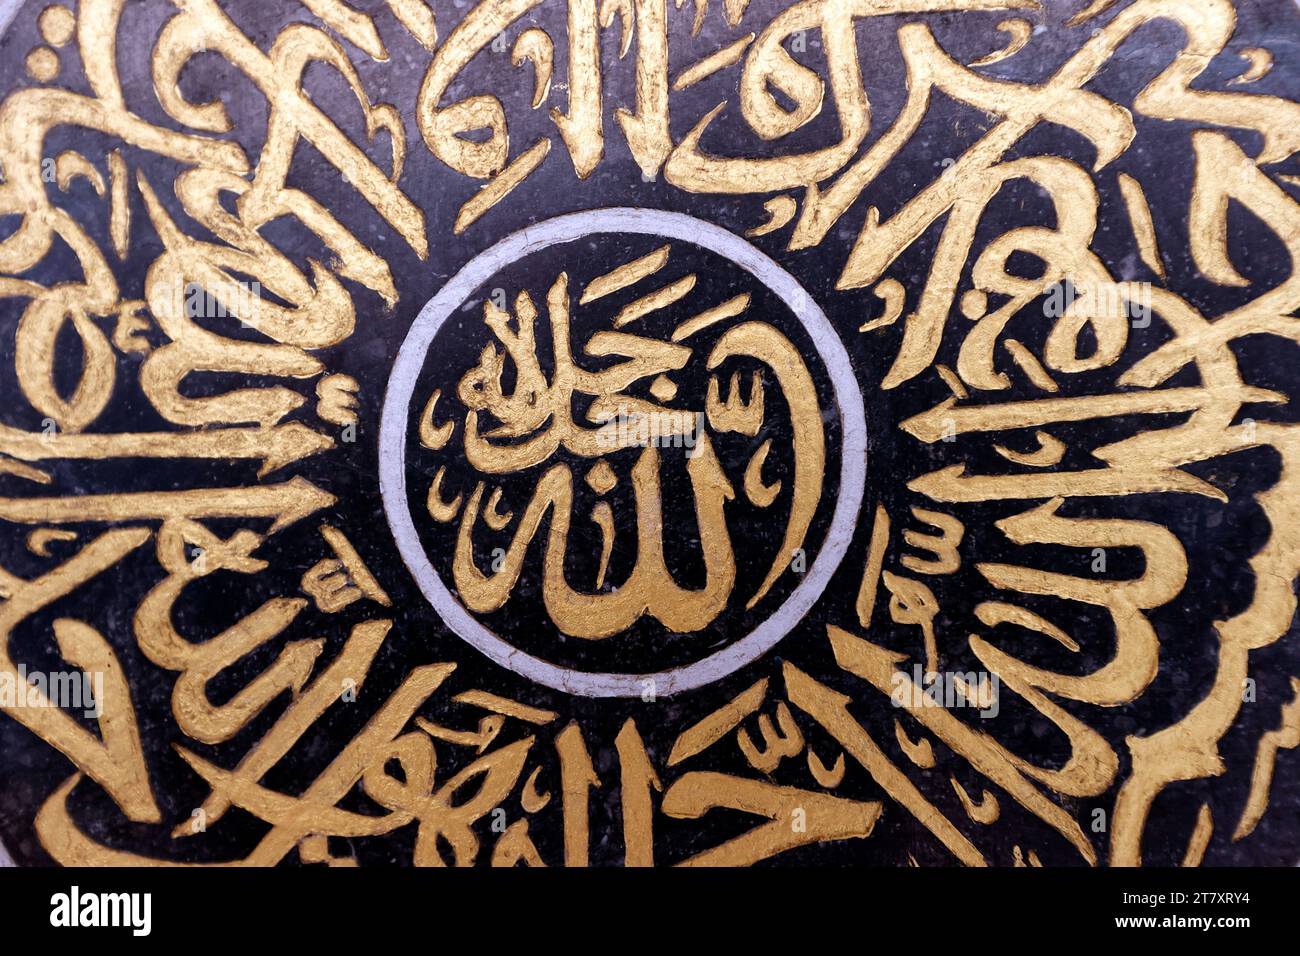 Decorazione della moschea, calligrafia araba, Allah (Dio) nell'Islam, moschea Masjid Mirasuddeen, Bangkok, Thailandia, Sud-est asiatico, Asia Foto Stock